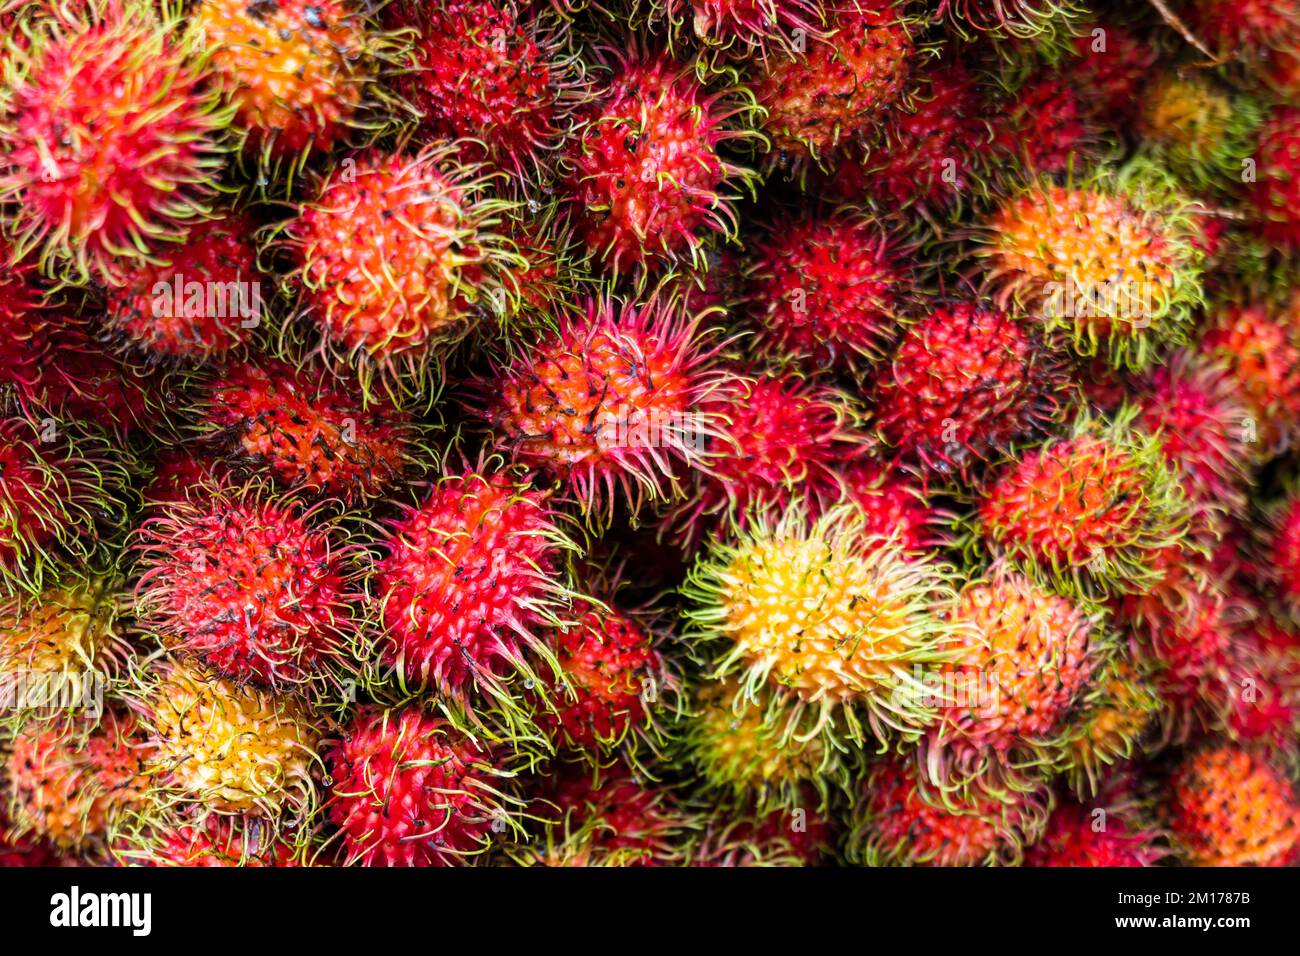 Rambutan sur le marché des fruits biologiques en Indonésie. Gros plan des fruits du rambutan (nom scientifique : Nephelium lapaceum) Banque D'Images